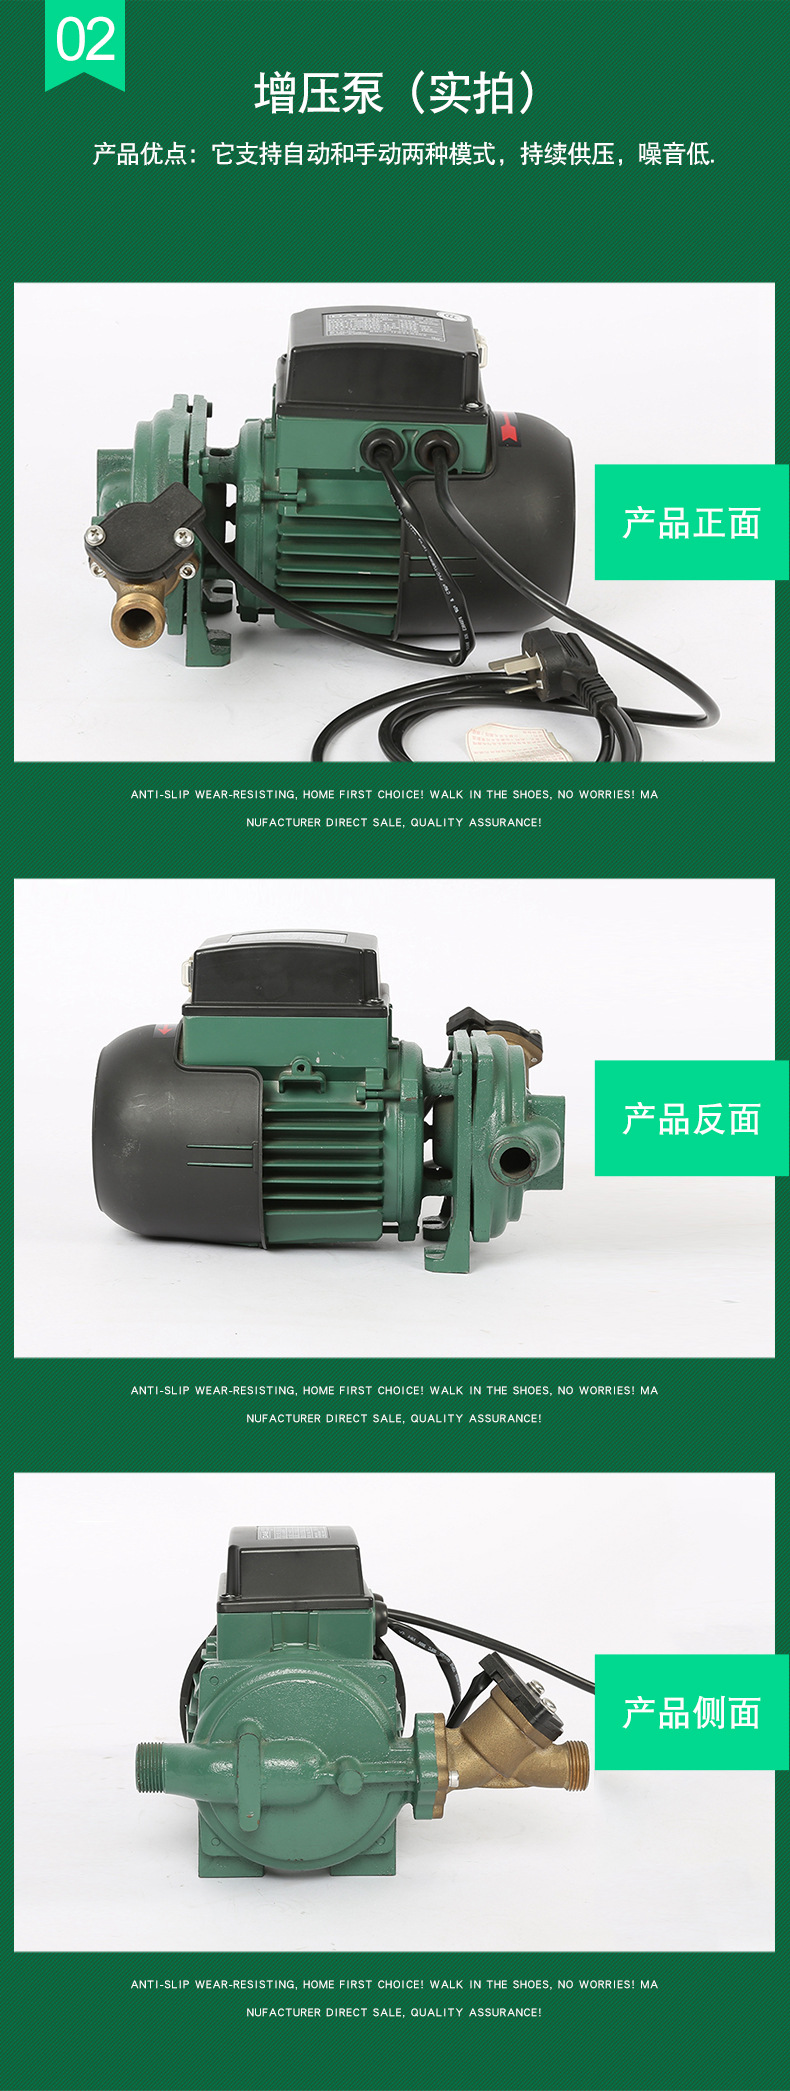 意大利DAB水泵冷热水增压泵进口品牌水泵家用增压泵k20/9示例图6